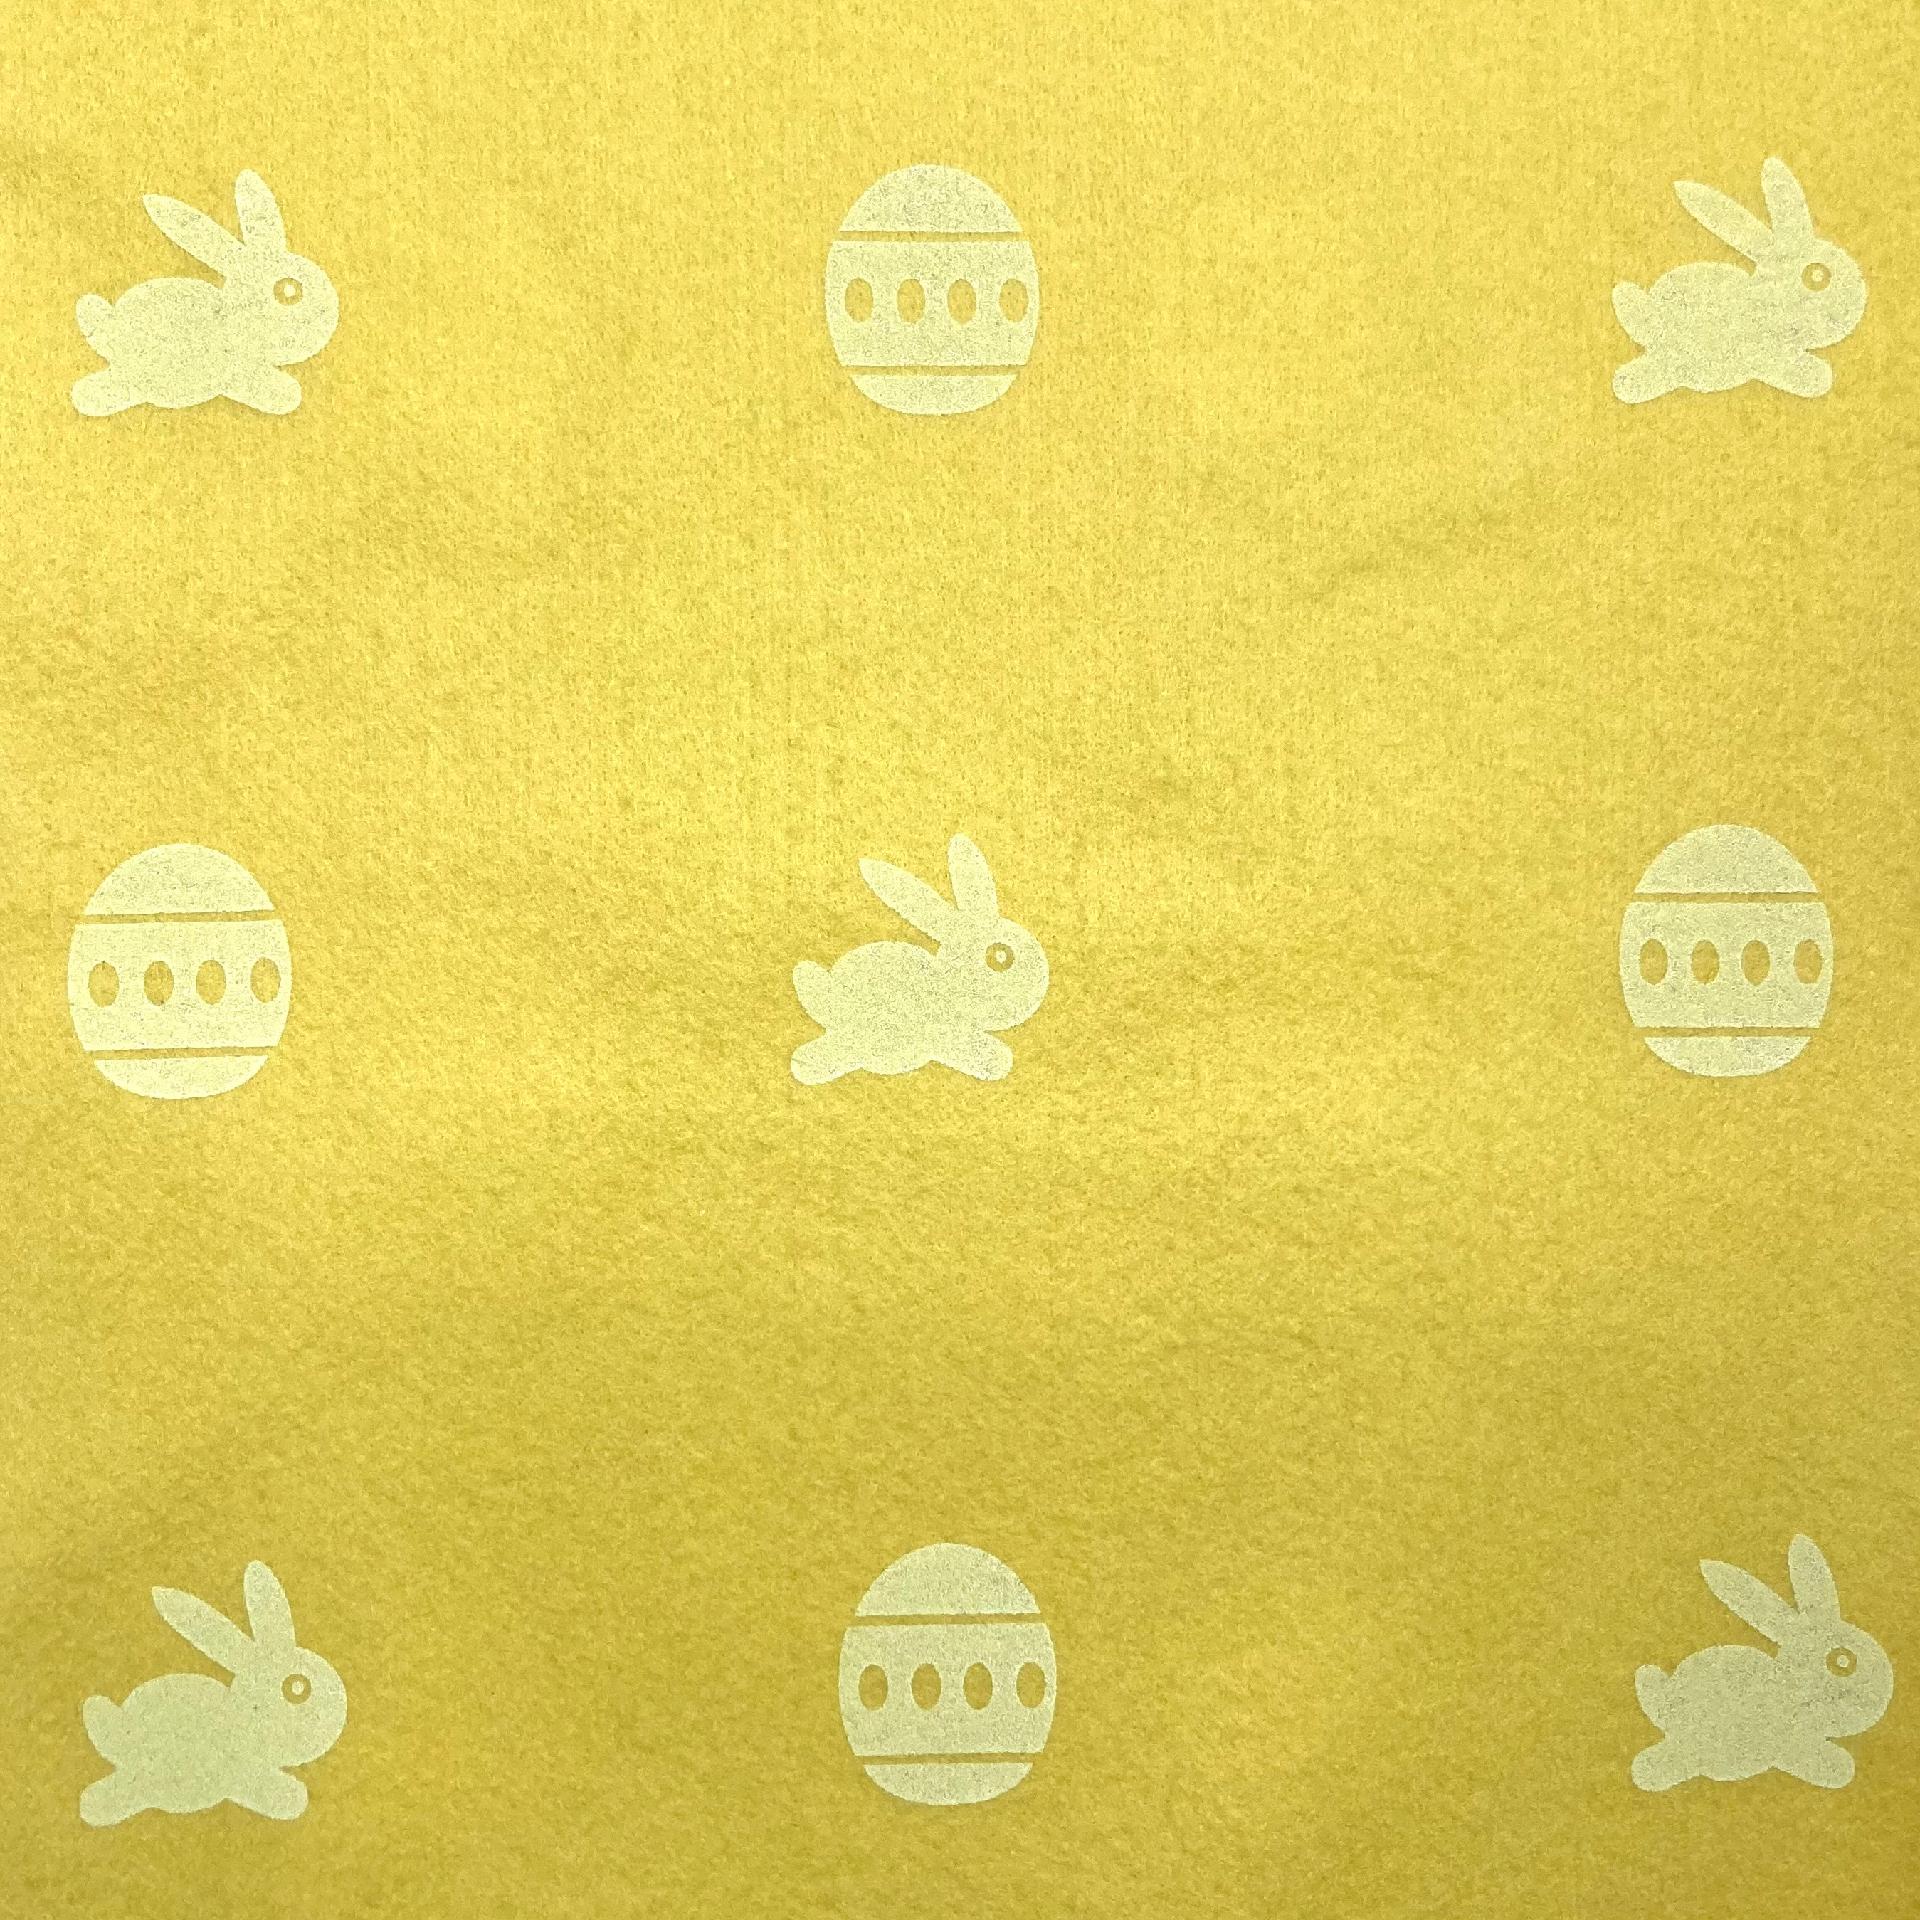 pannolenci stampato giallo con uova pasquali e conigli stafil 30 x 40 cm -  Bagheria (Palermo)